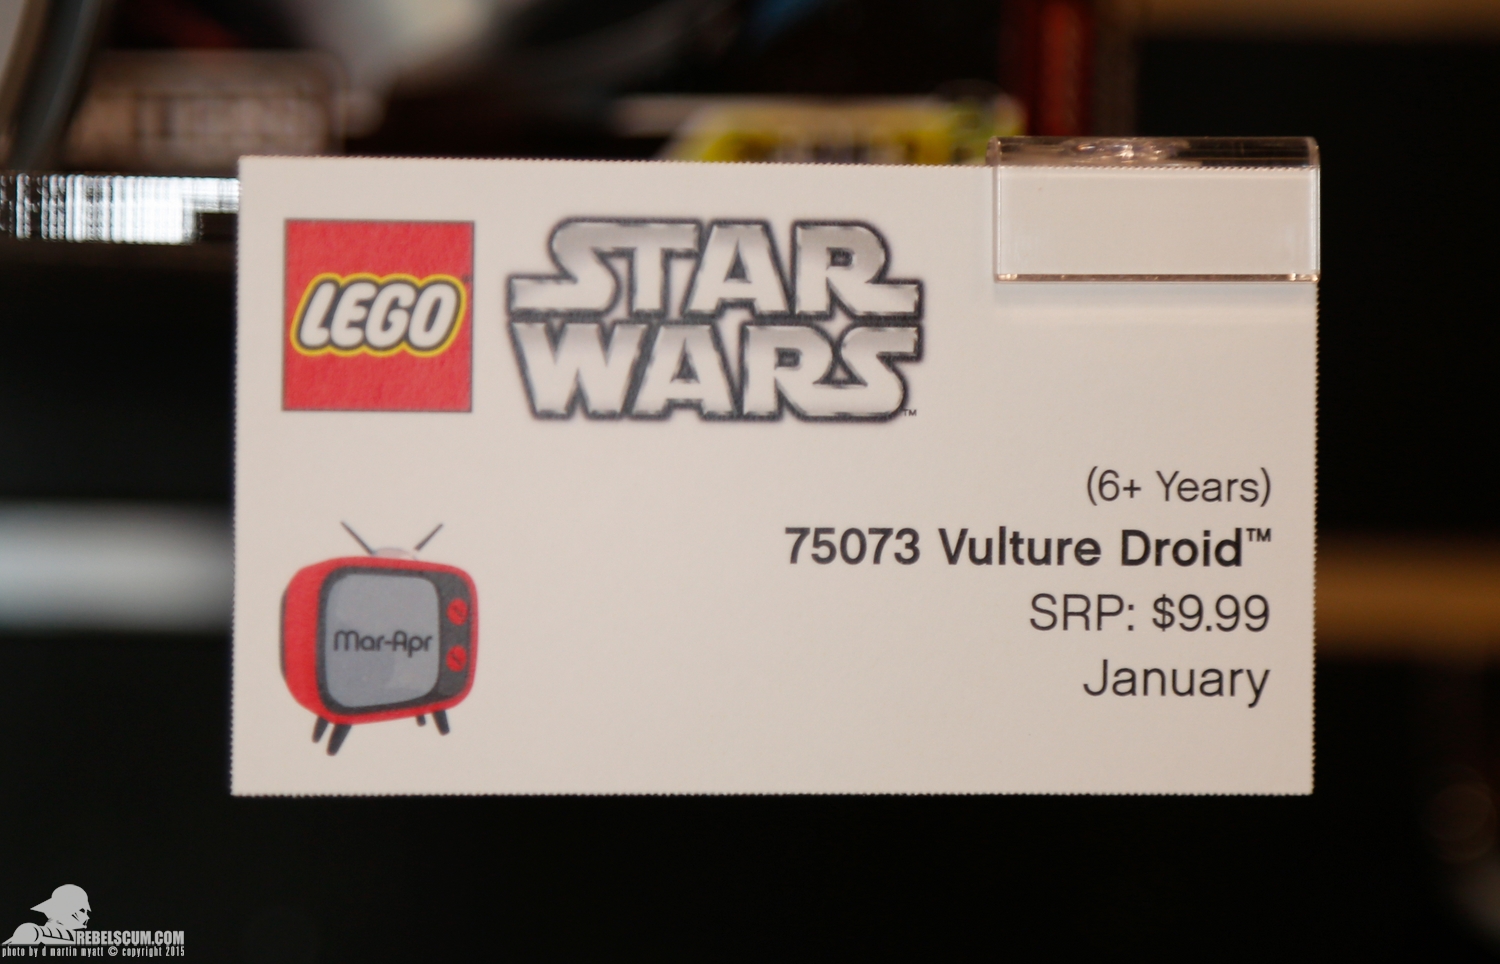 2015-International-Toy-Fair-Star-Wars-Lego-006.jpg